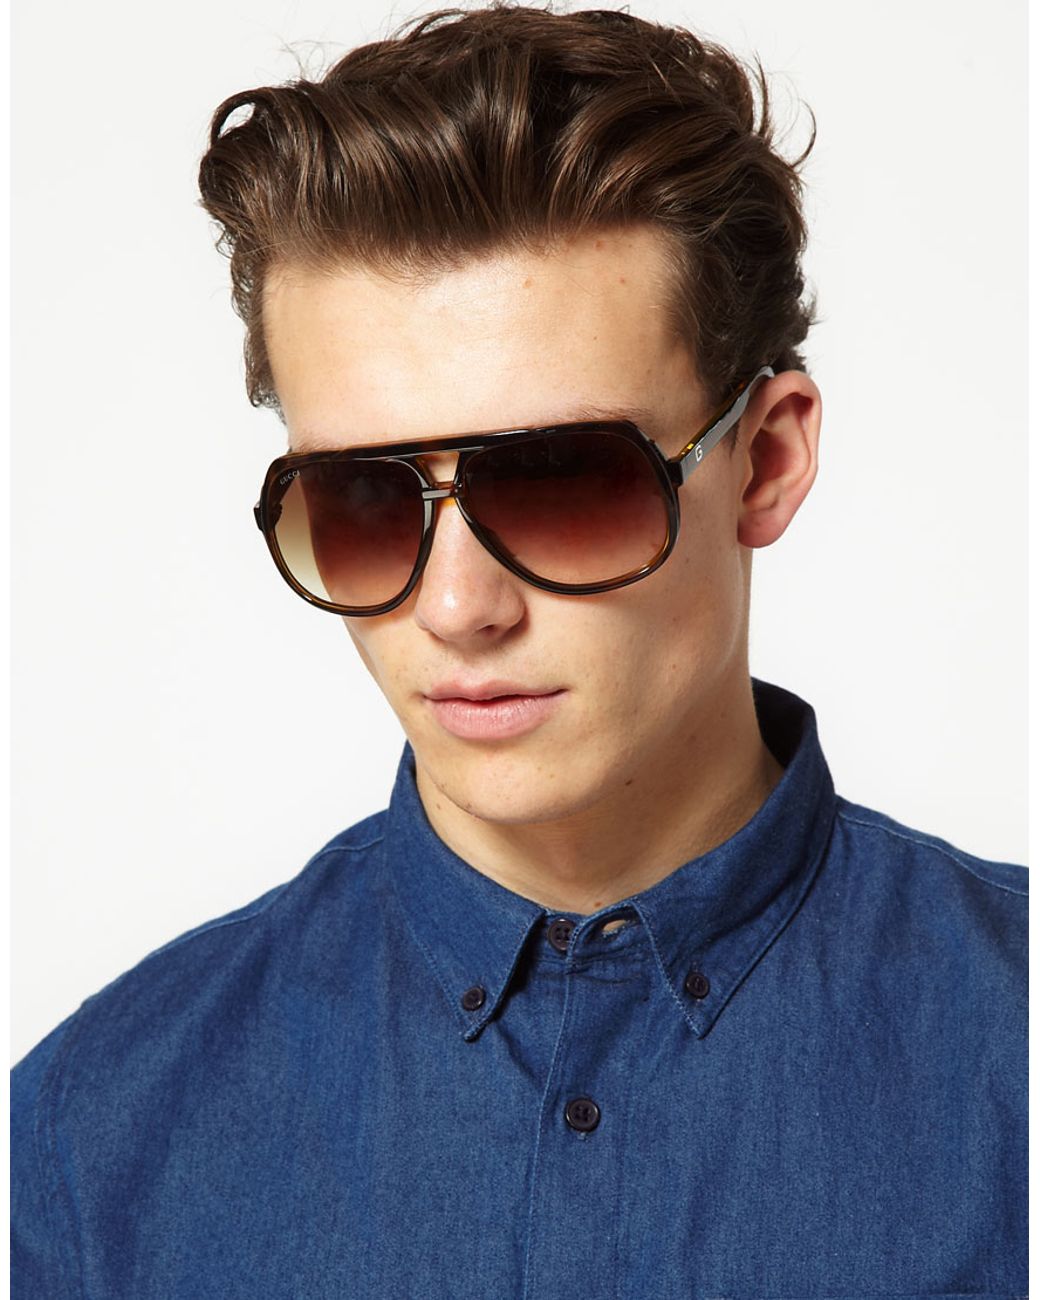 Коричневые очки мужские солнцезащитные. Очки солнцезащитные мужские. Стильные мужские очки. Классные мужские очки. Стильные мужские очки солнцезащитные.